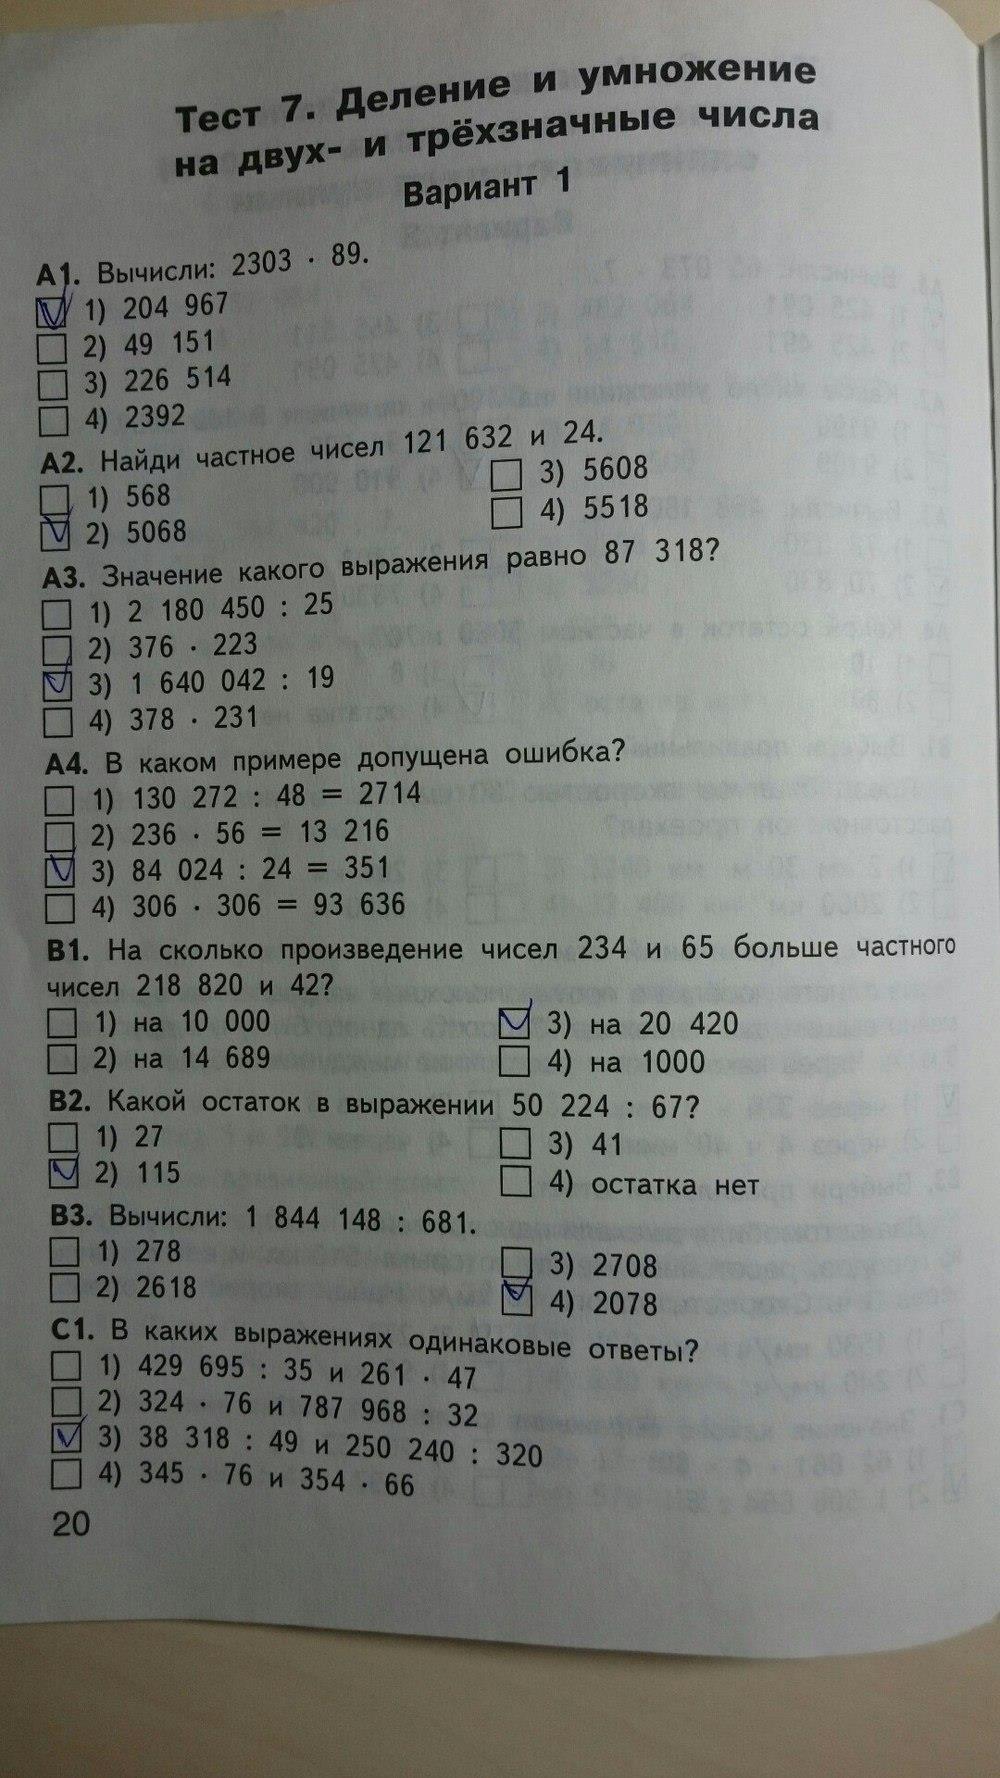 гдз 4 класс контрольно-измерительные материалы страница 20 математика Ситникова